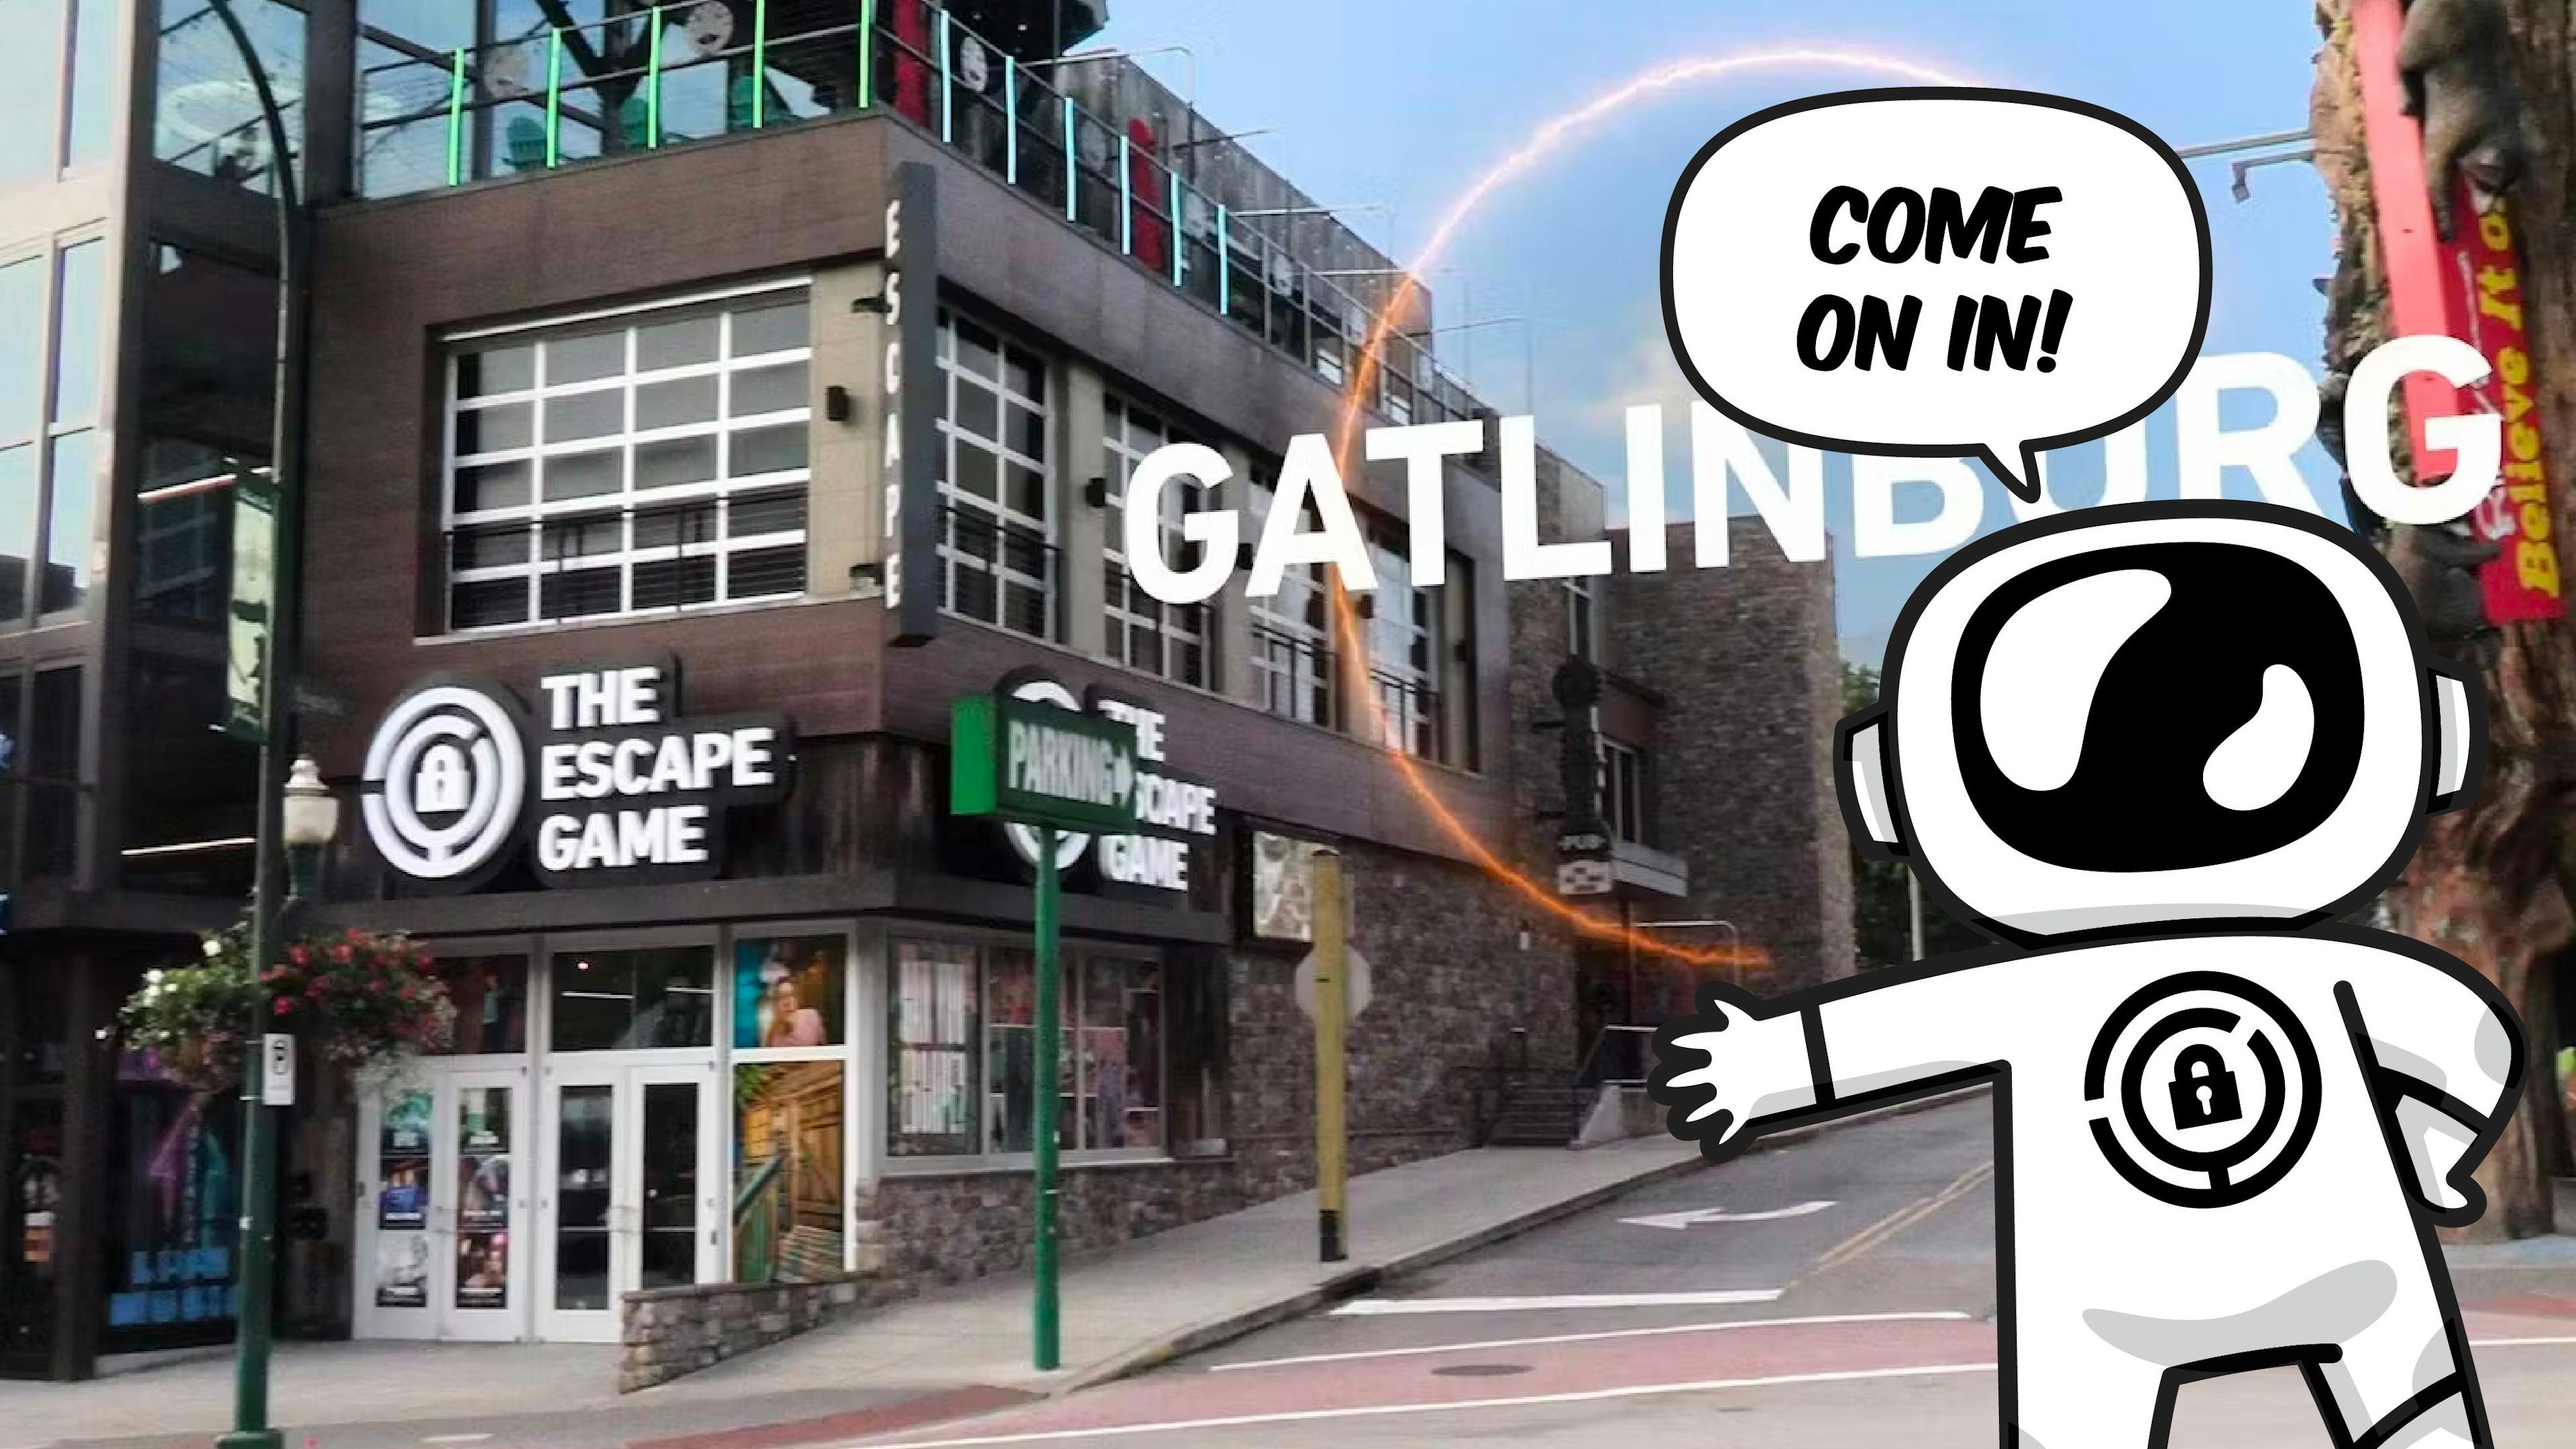 The Escape Game Gatlinburg Location Video